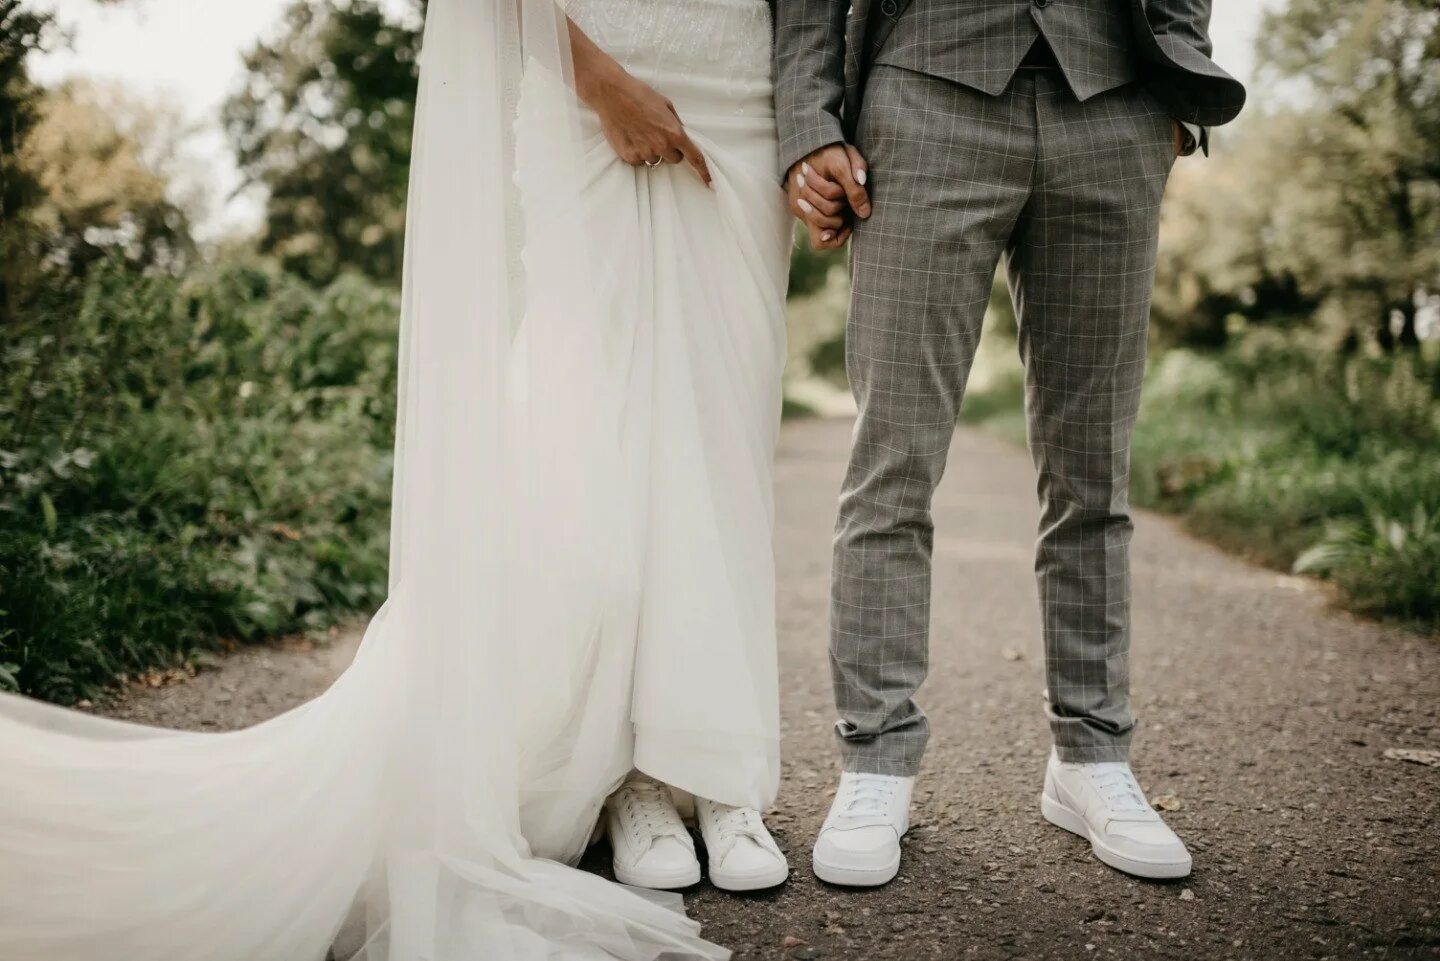 Брачная одежда. Кеды на свадьбу невесте и жениху. Свадебное платье с кедами. Свадебное платье с кроссовками. Свалелеое платье с кроссовками.